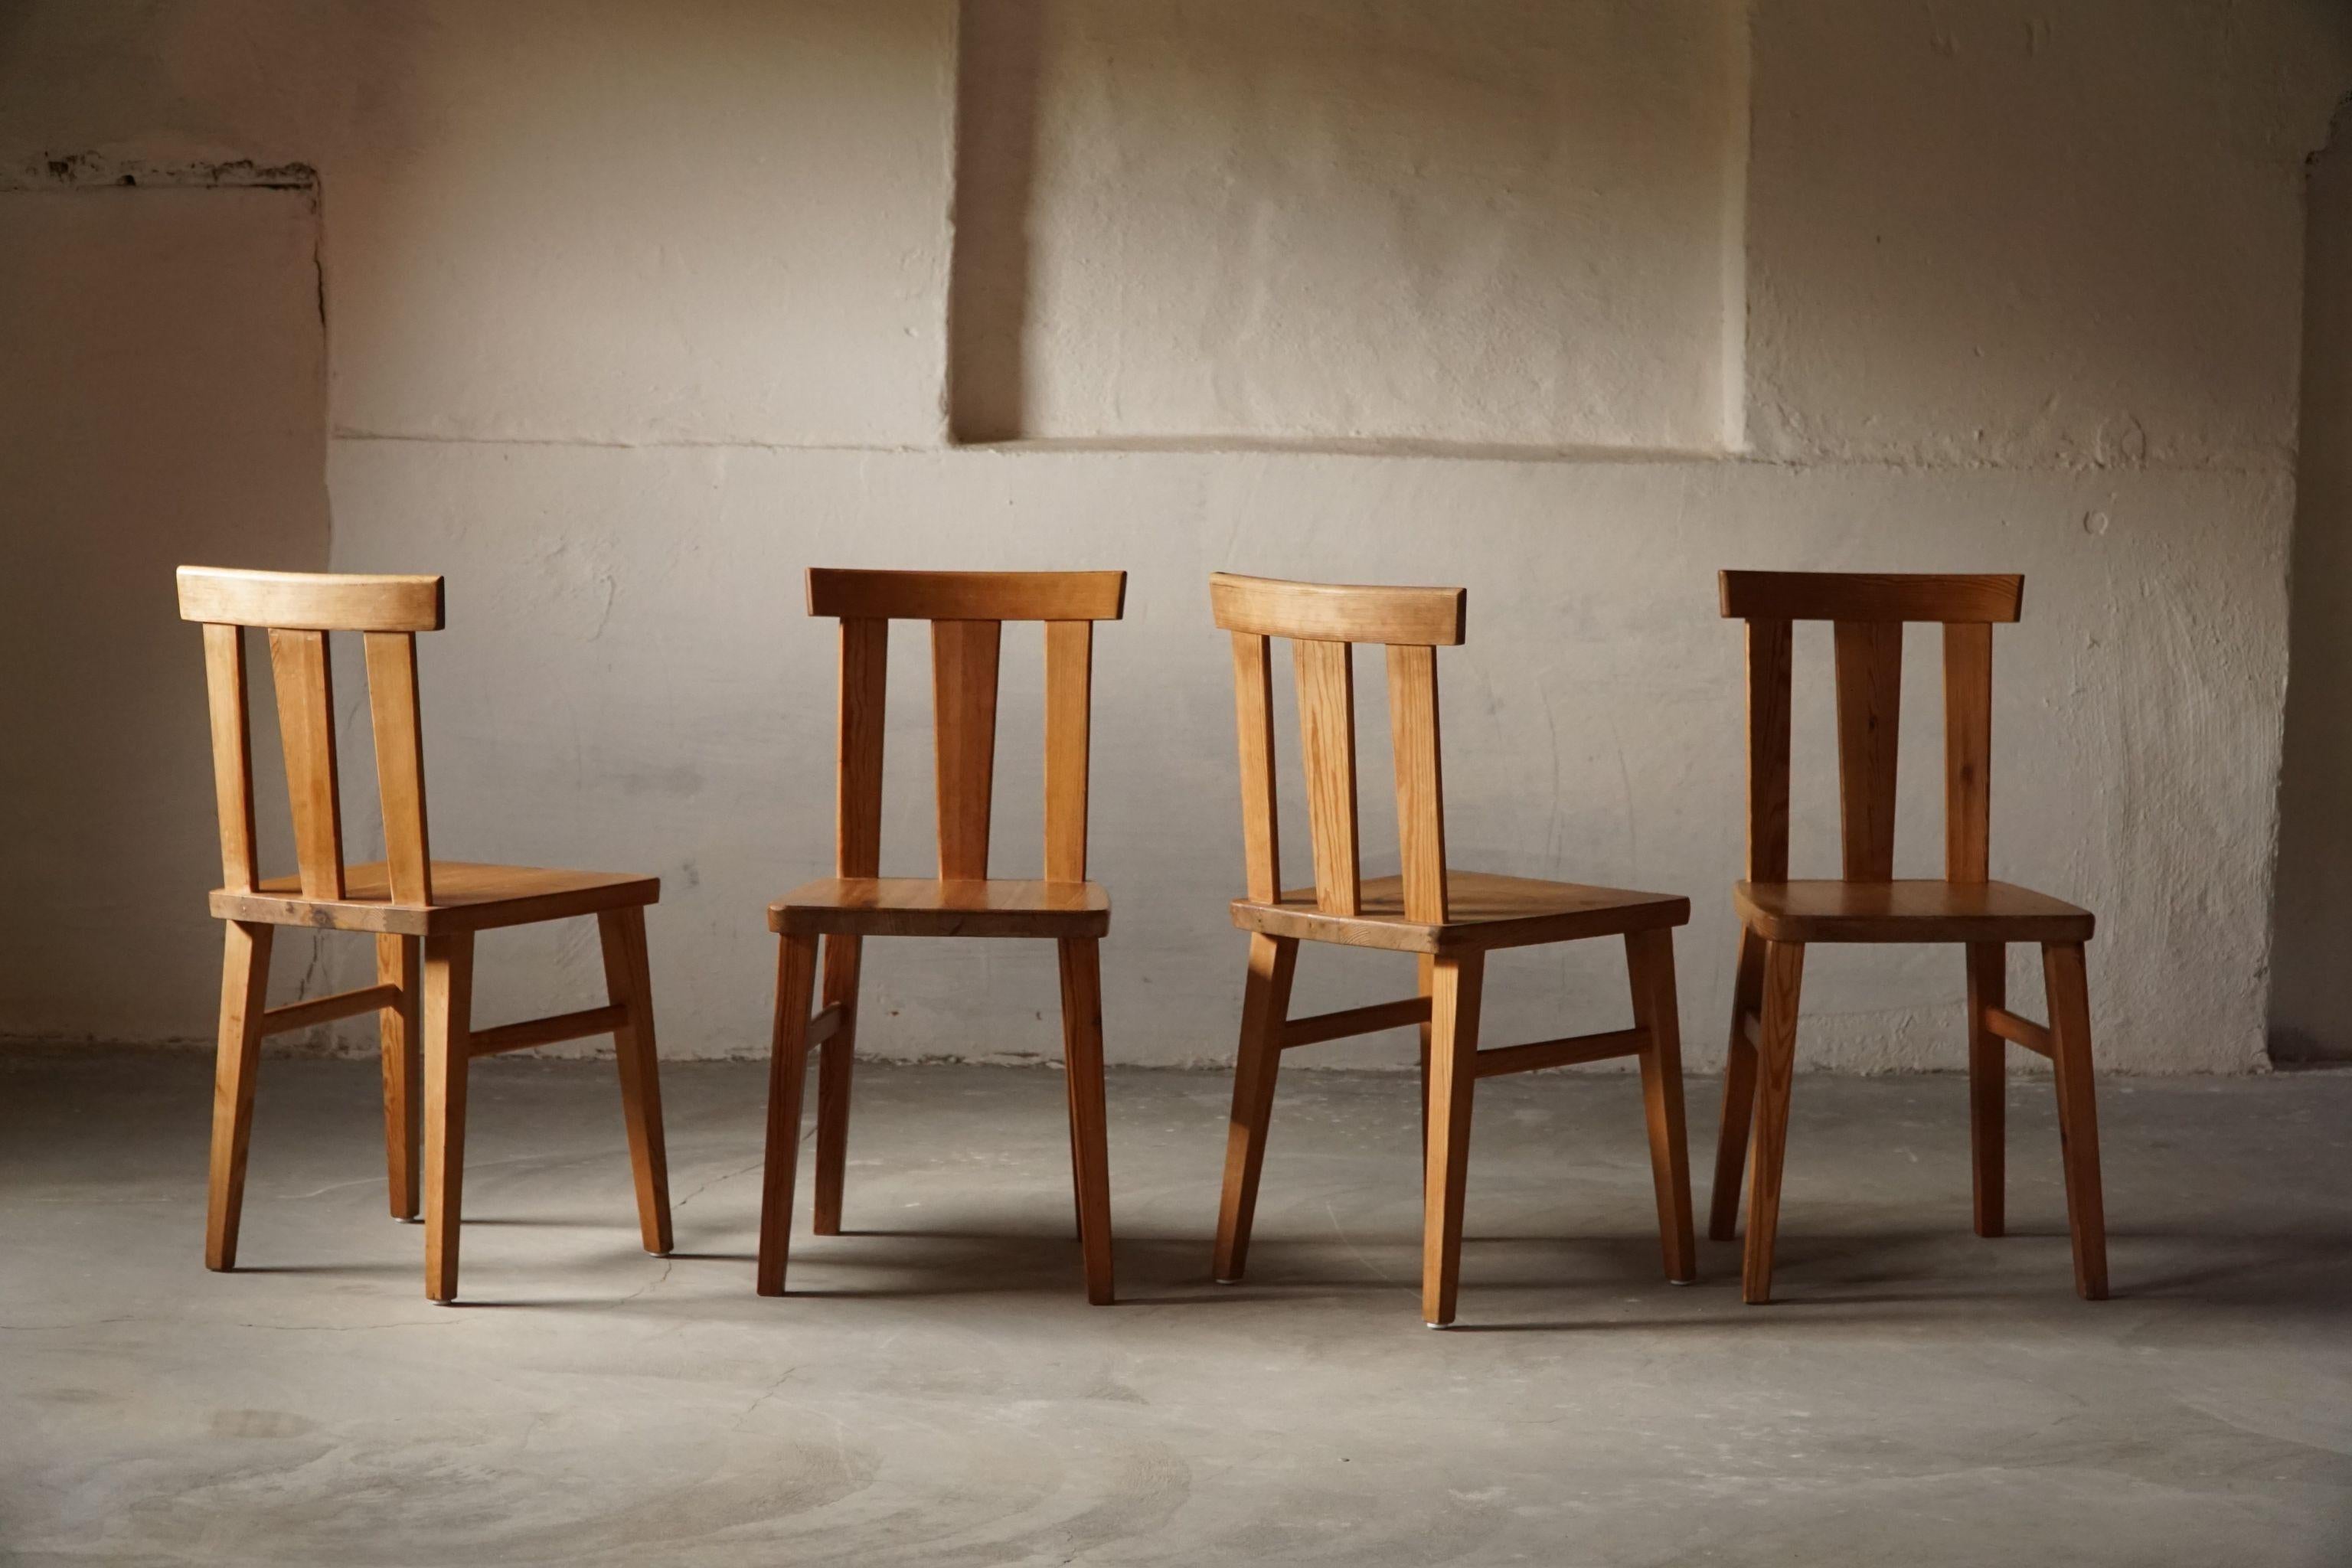 Ein Satz von 4 Esszimmerstühlen aus massivem Kiefernholz, von einem schwedischen Tischler in den 1930er Jahren.
Hergestellt im Stil der ikonischen Stühle von Axel Einar Hjorth, Modell 